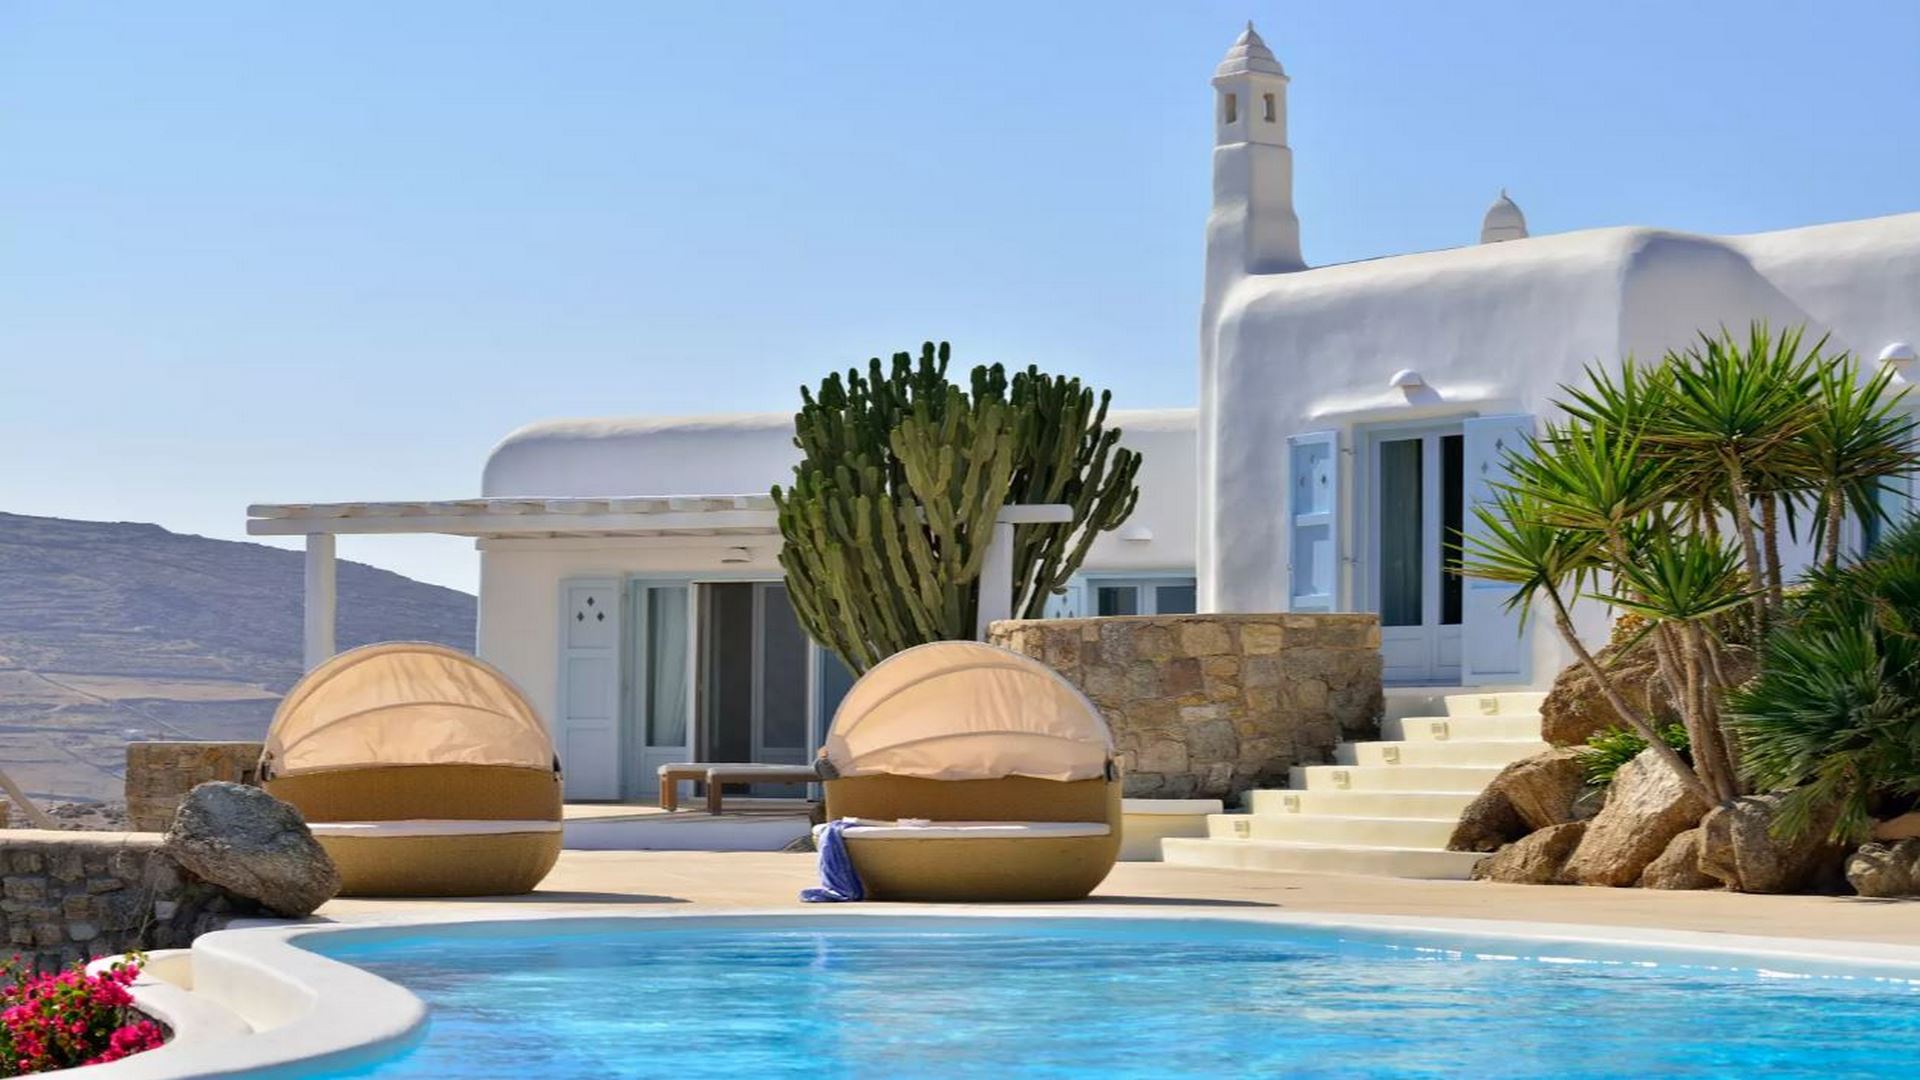 7-bdrm villa for rent in Mykonos